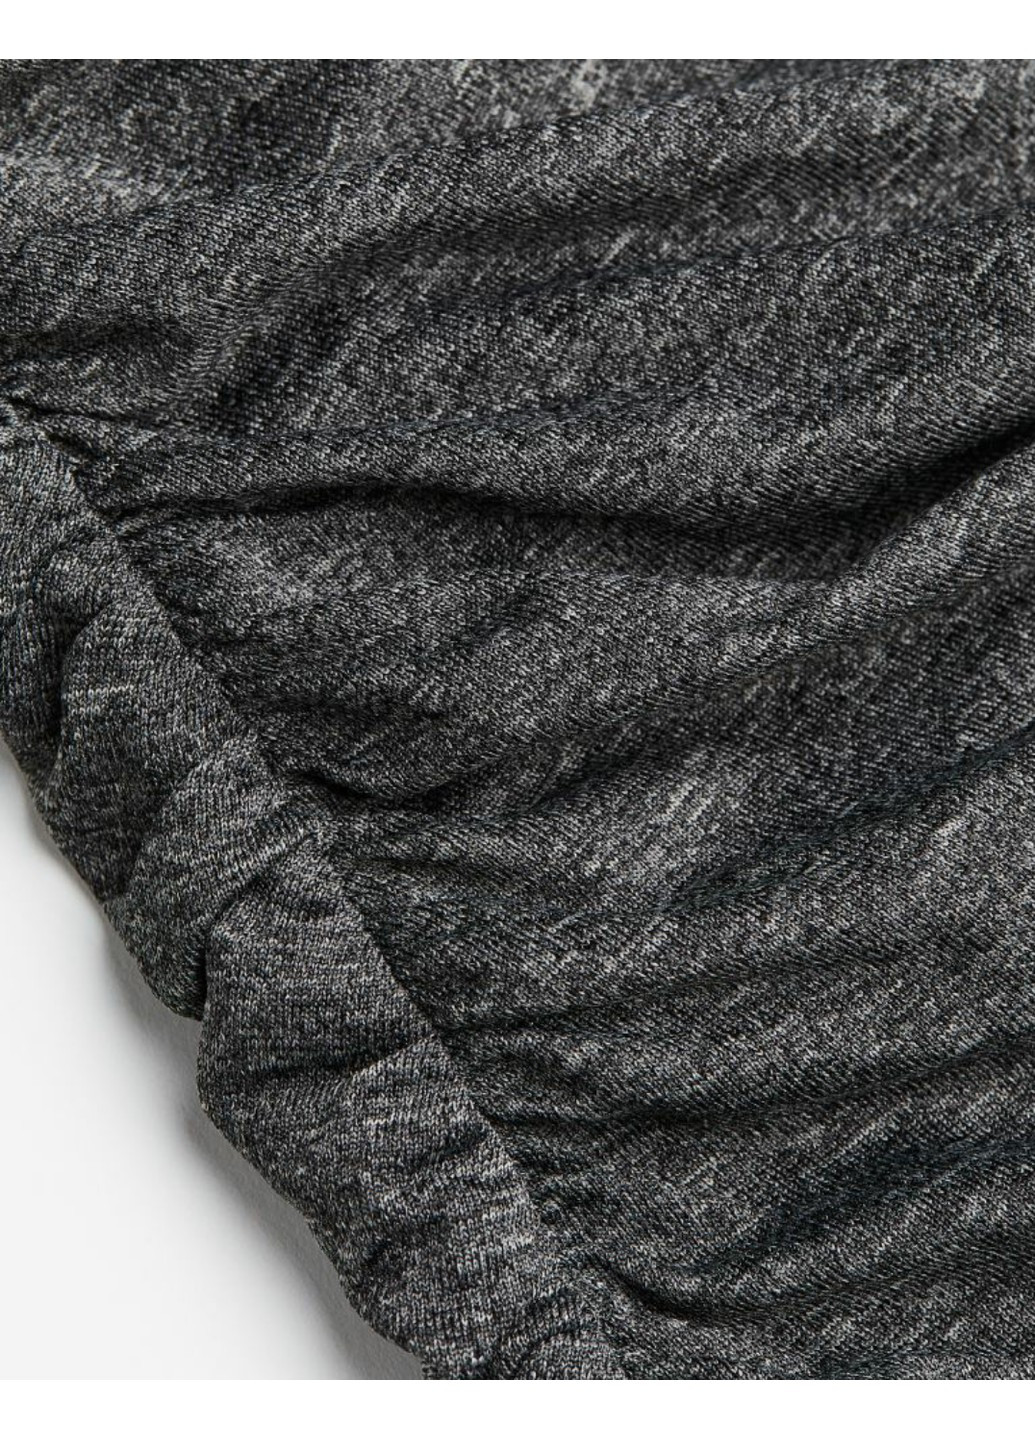 Сіра вечірня жіноча трикотажна сукня з високим коміром н&м (56556) xs сіра H&M